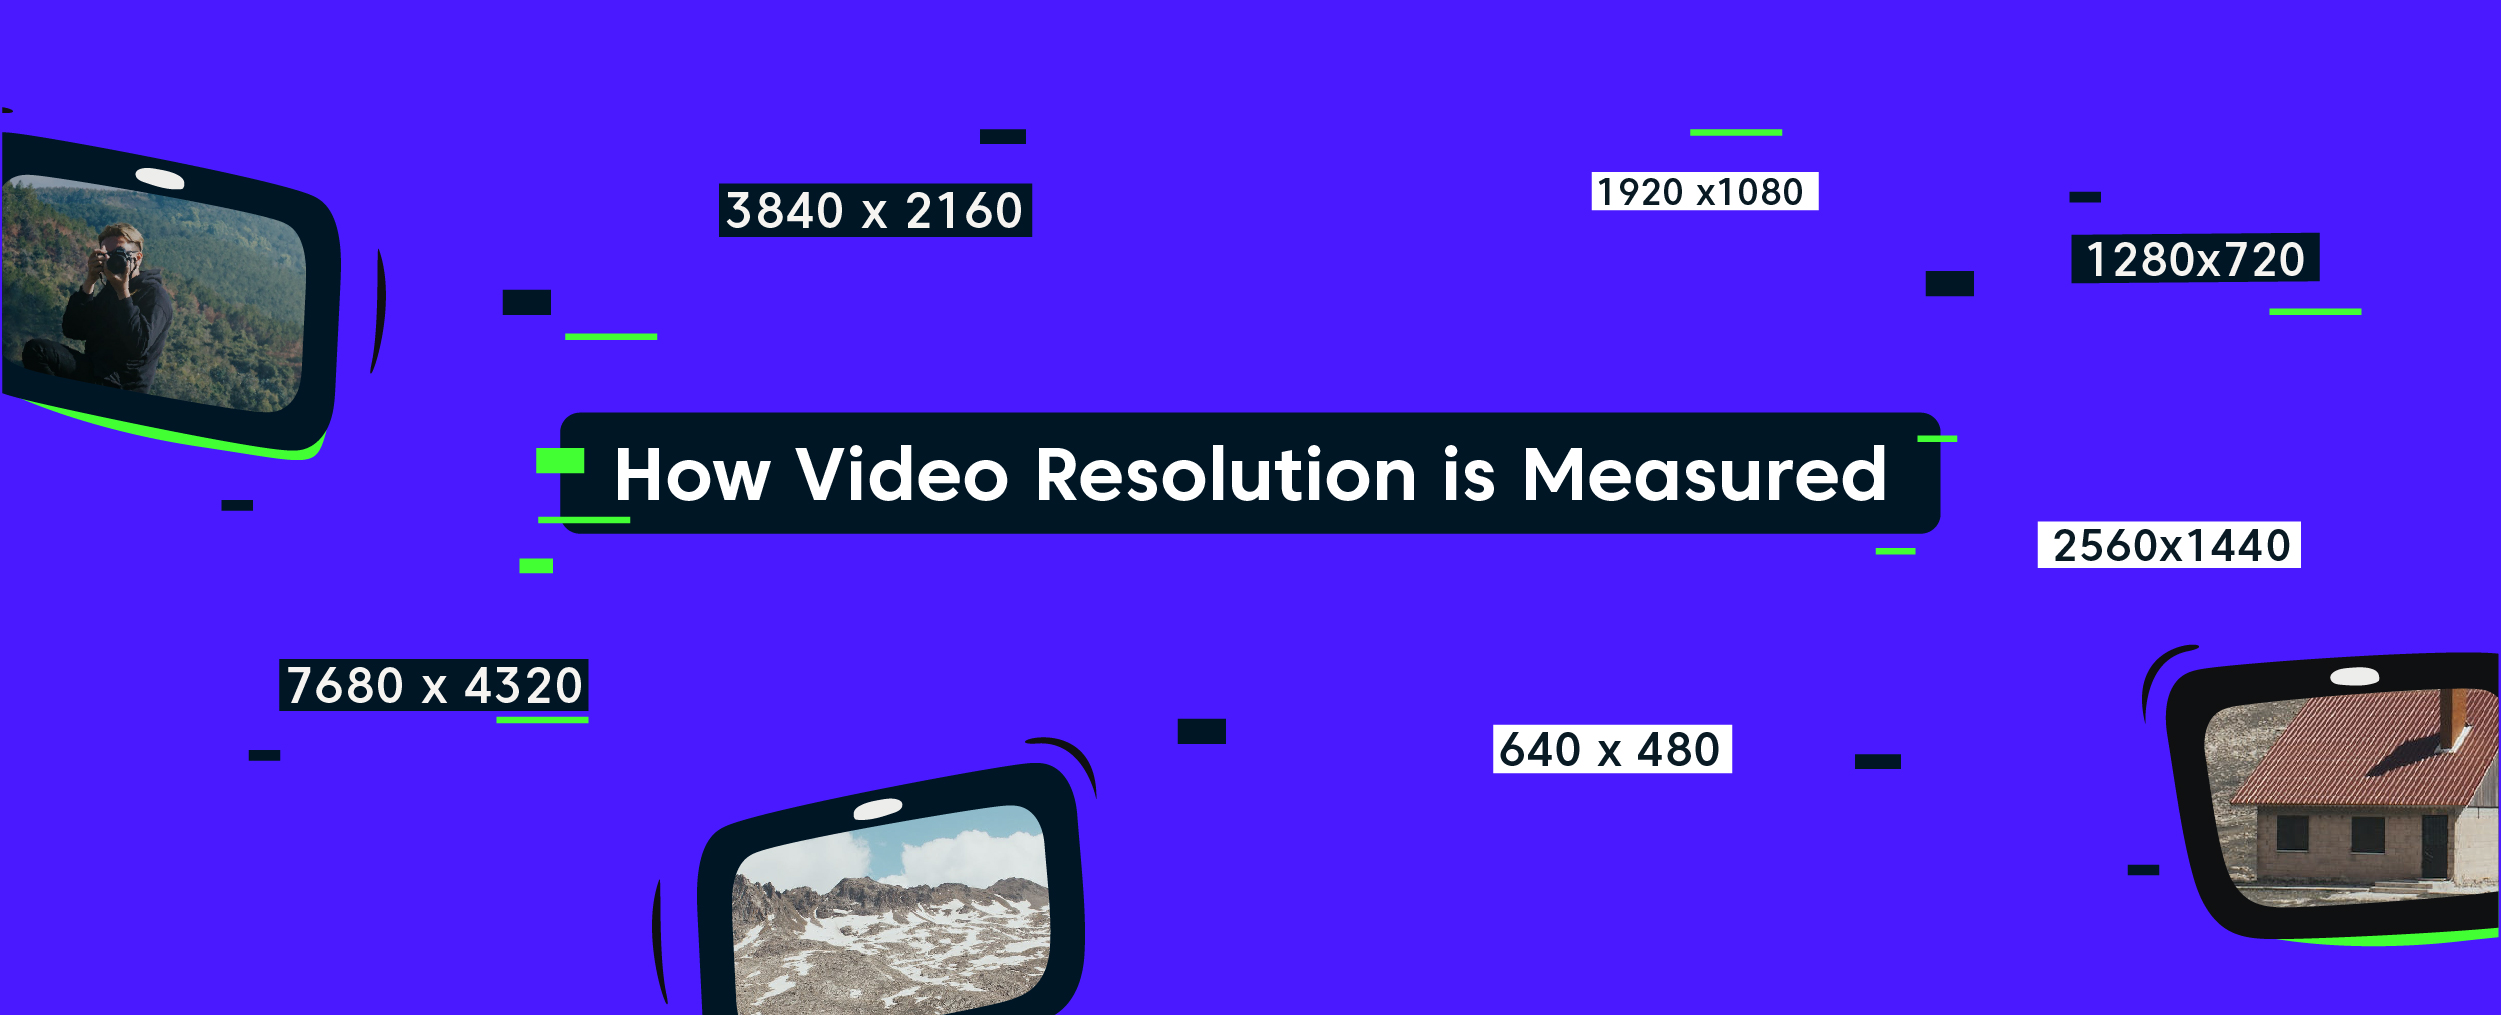 如何测量视频分辨率